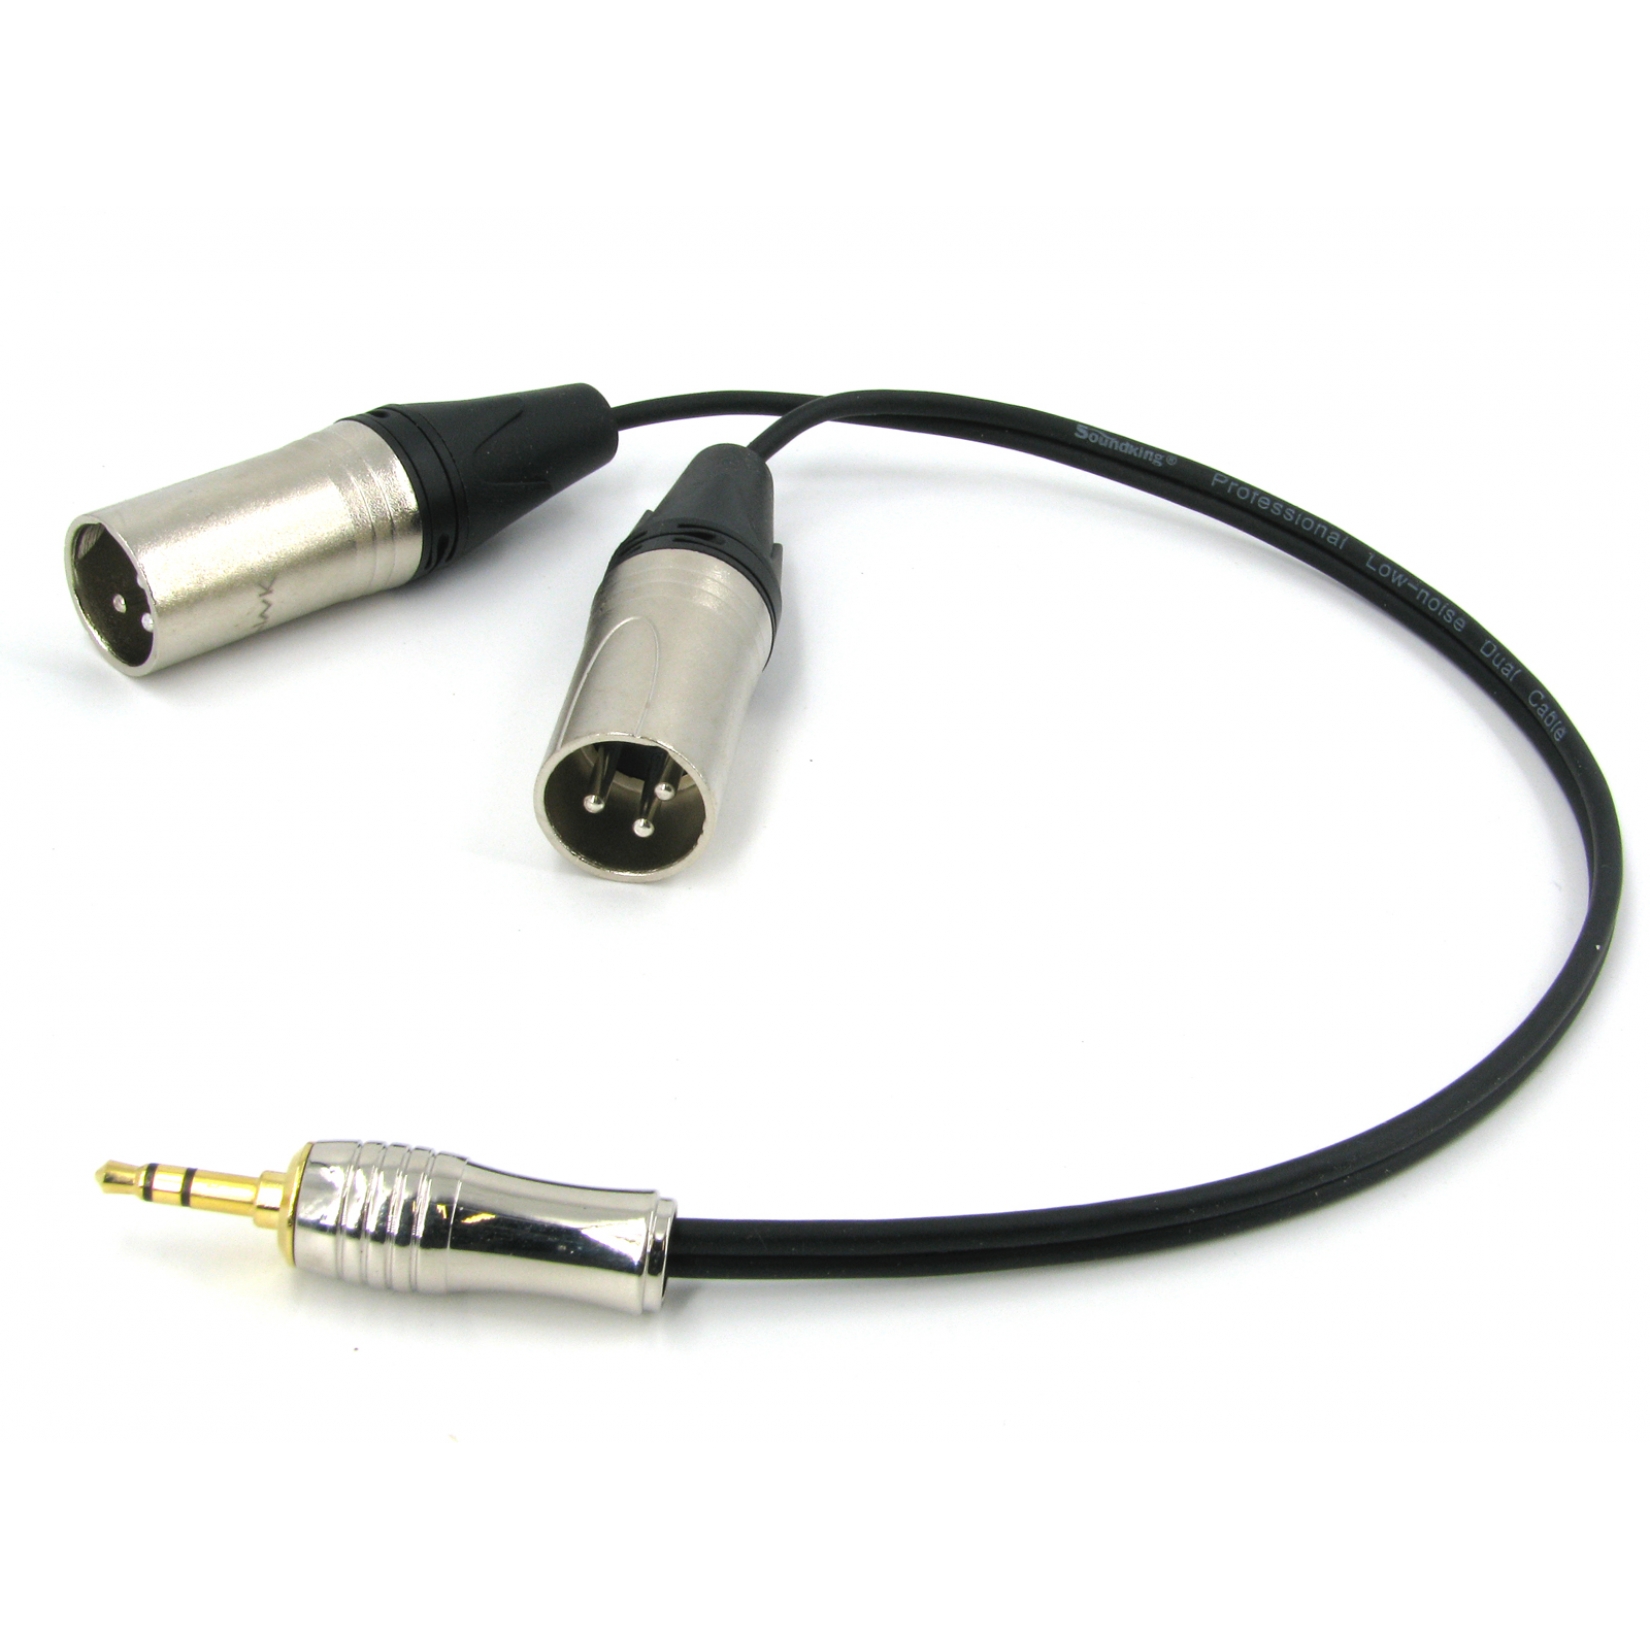 Y кабель mini JACK 3.5 - 2 x XLR (M) несимметричный, netaudio, GA402, длина 0.5 метра